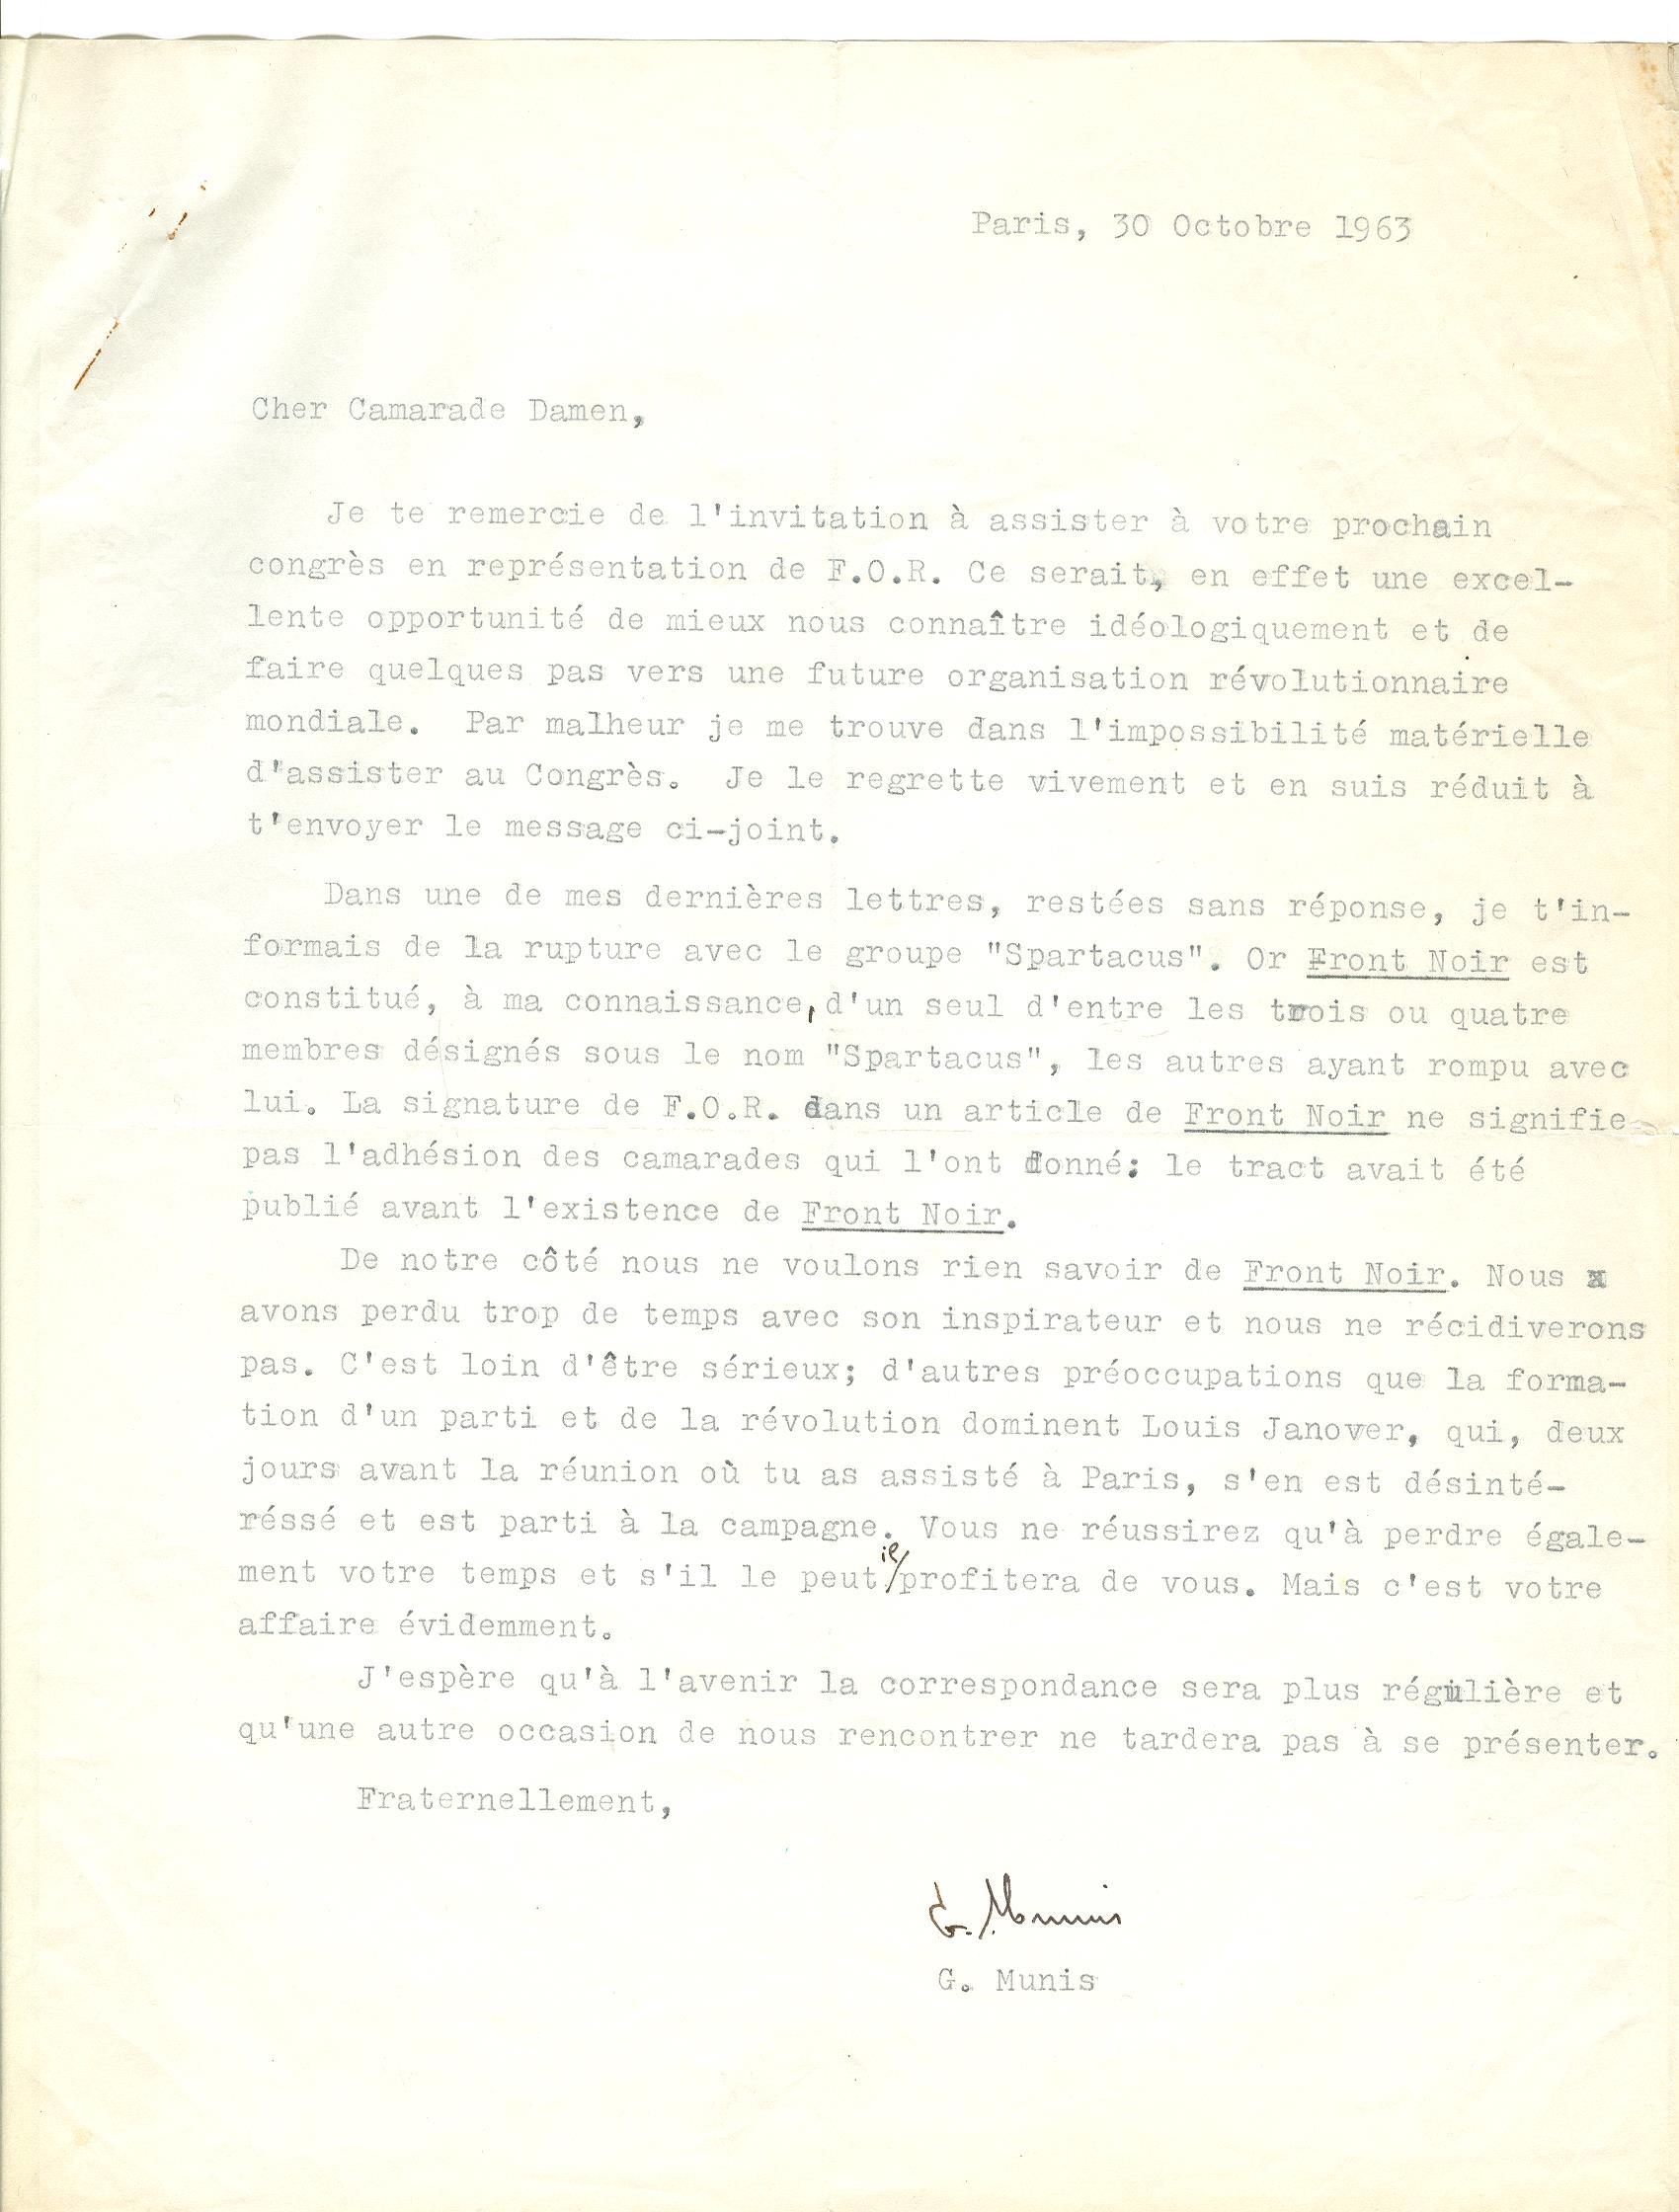 08 >> 6 - Lettera di Munis a Onorato Damen (30 ottobre 1963)